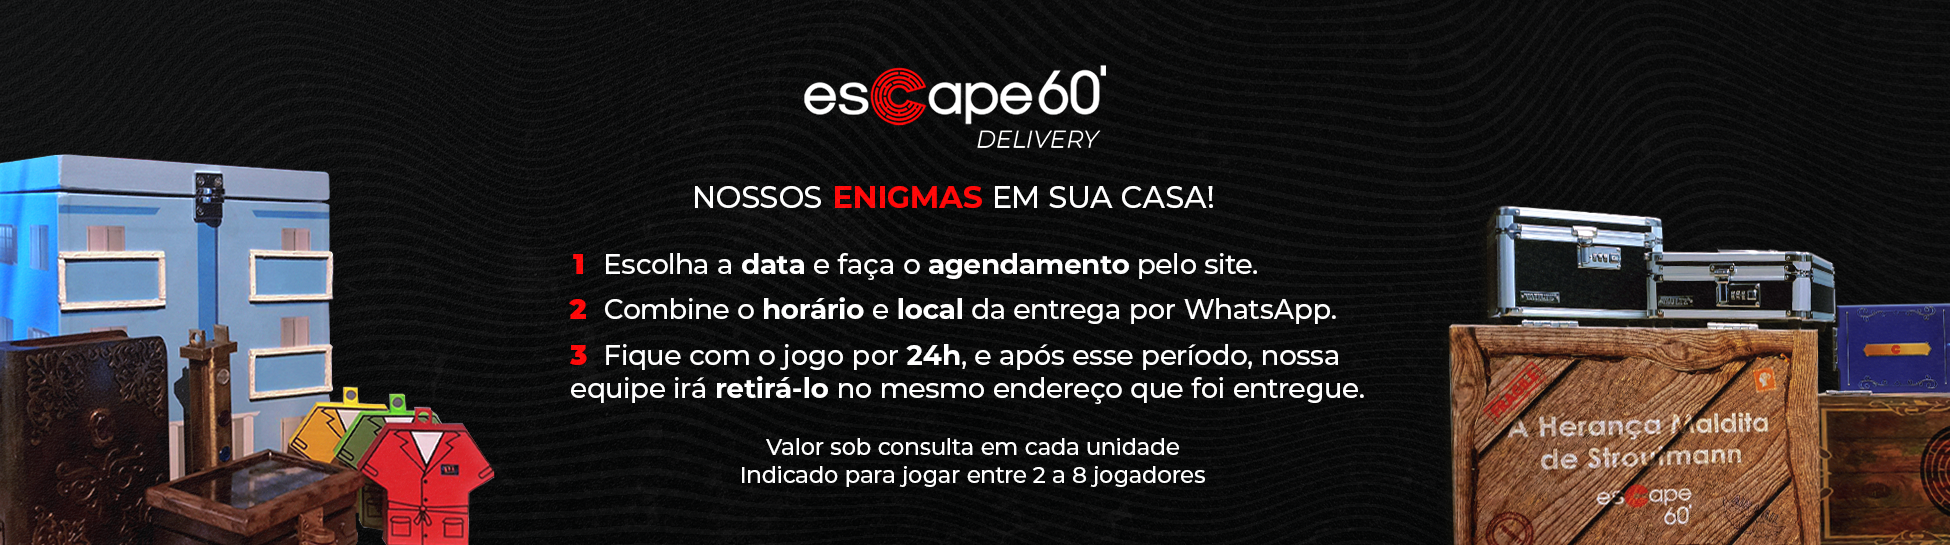 Escape 60: você vai querer viver essa experiência 